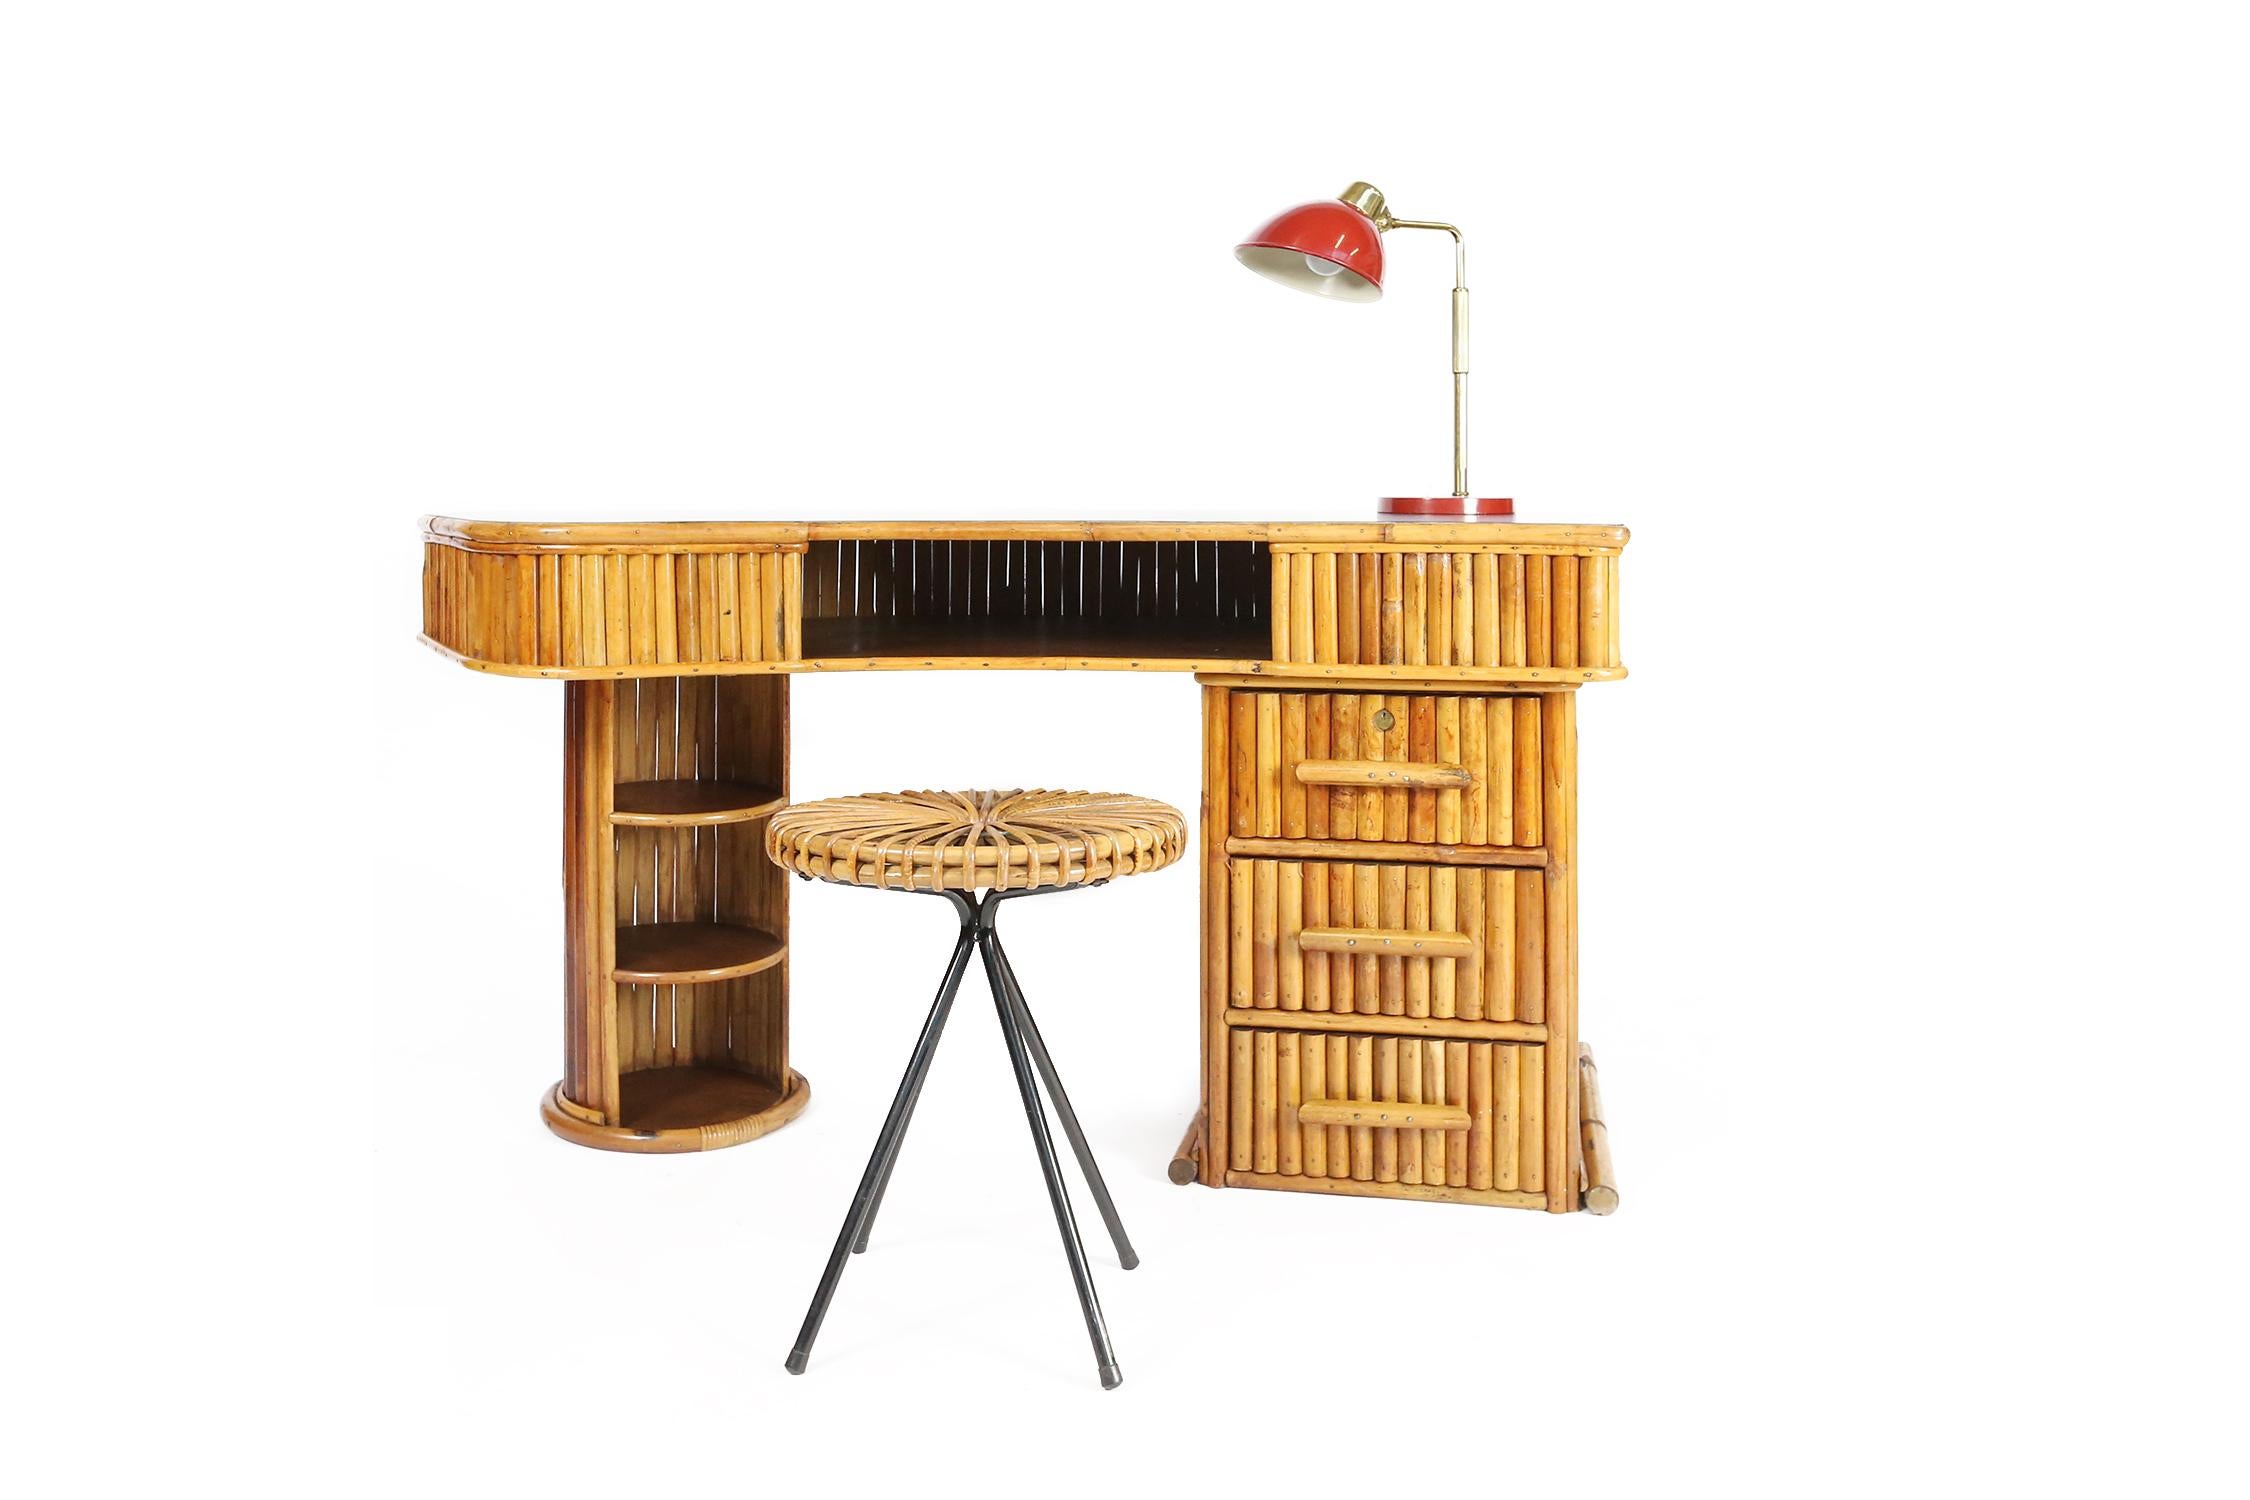 Restaurierter französischer Bambusschreibtisch mit drei seitlichen Schubladen. Der Schreibtisch hat eine geschwungene Formica-Platte und ist elegant mit einzigartigen Details konstruiert.
 